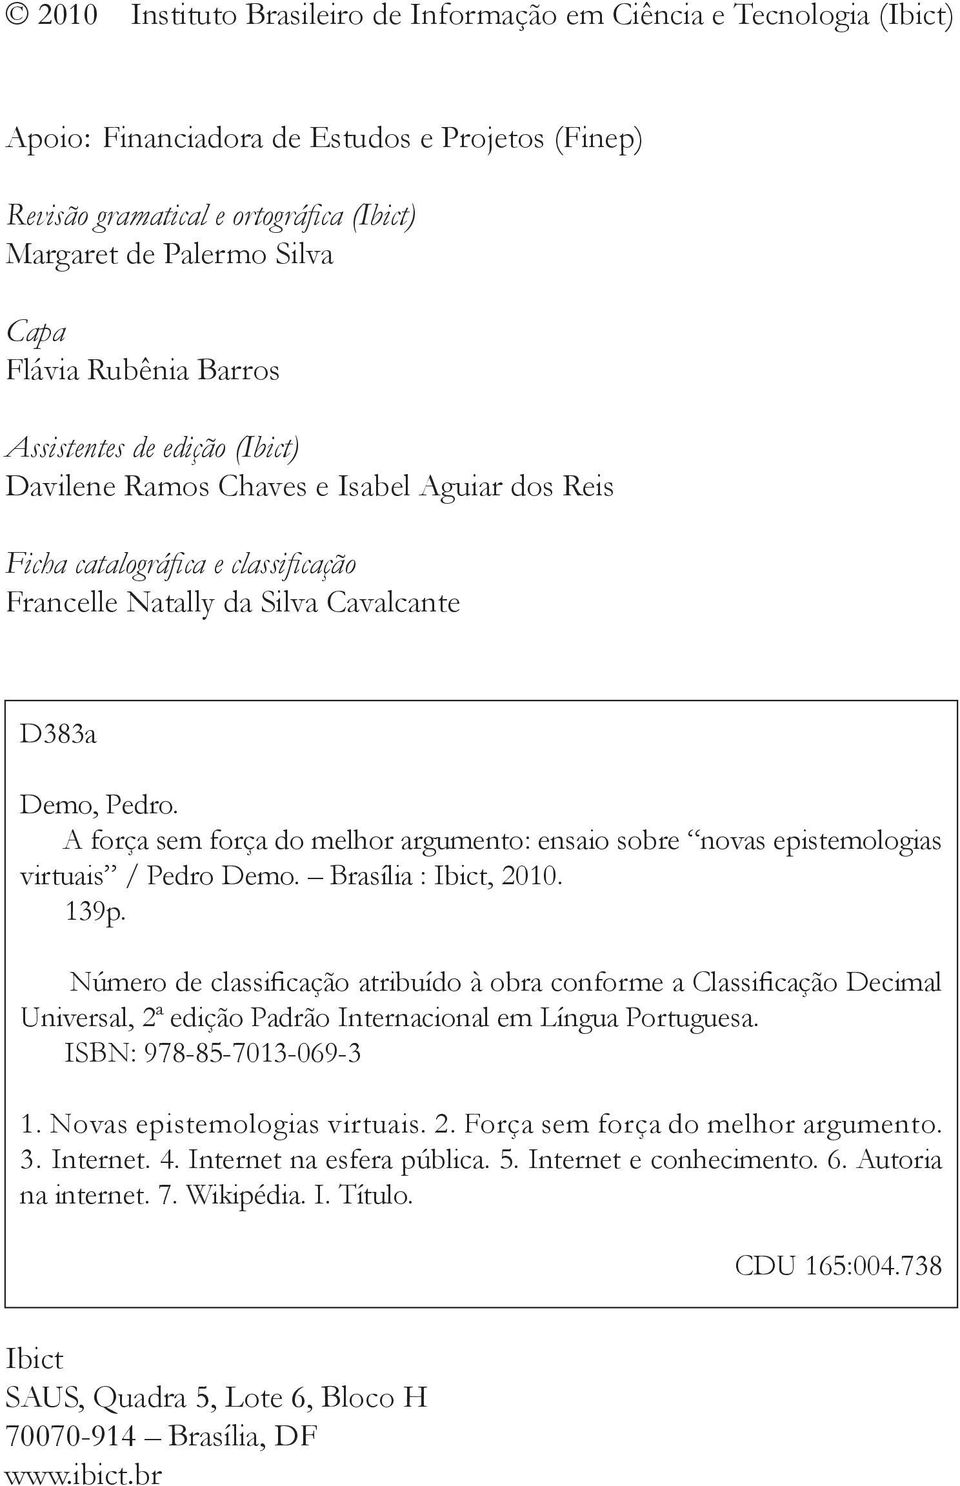 A força sem força do melhor argumento: ensaio sobre novas epistemologias virtuais / Pedro Demo. Brasília : Ibict, 2010. 139p.